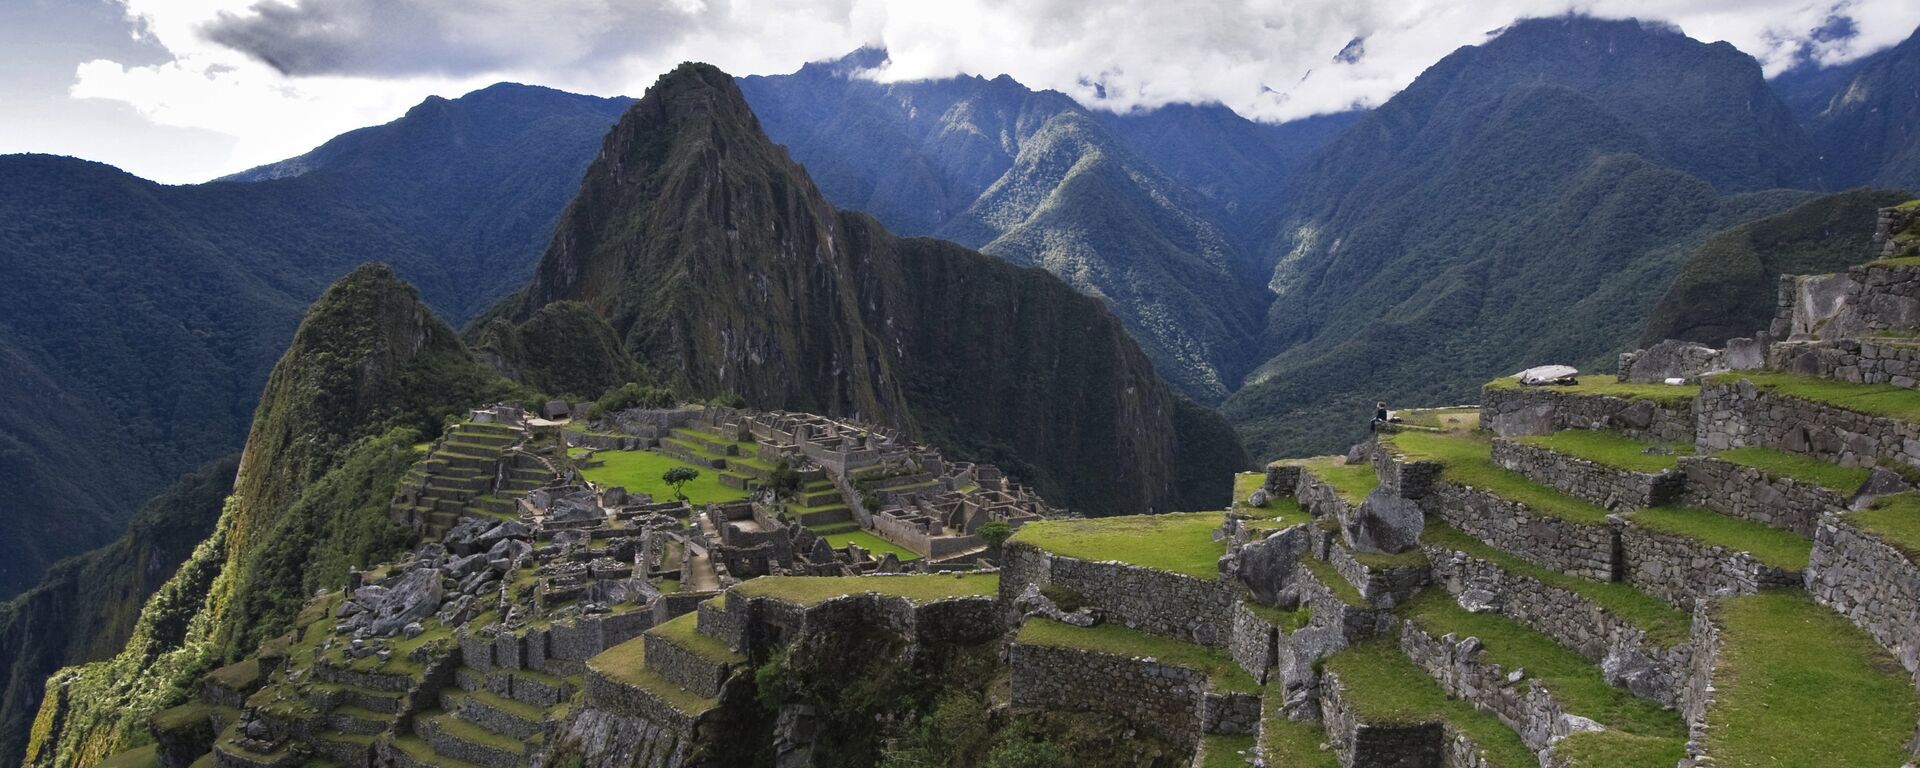 Vista de la montaña Huayna Picchu y las ruinas de la antigua ciudad de Machu Picchu. - Sputnik Mundo, 1920, 24.09.2019